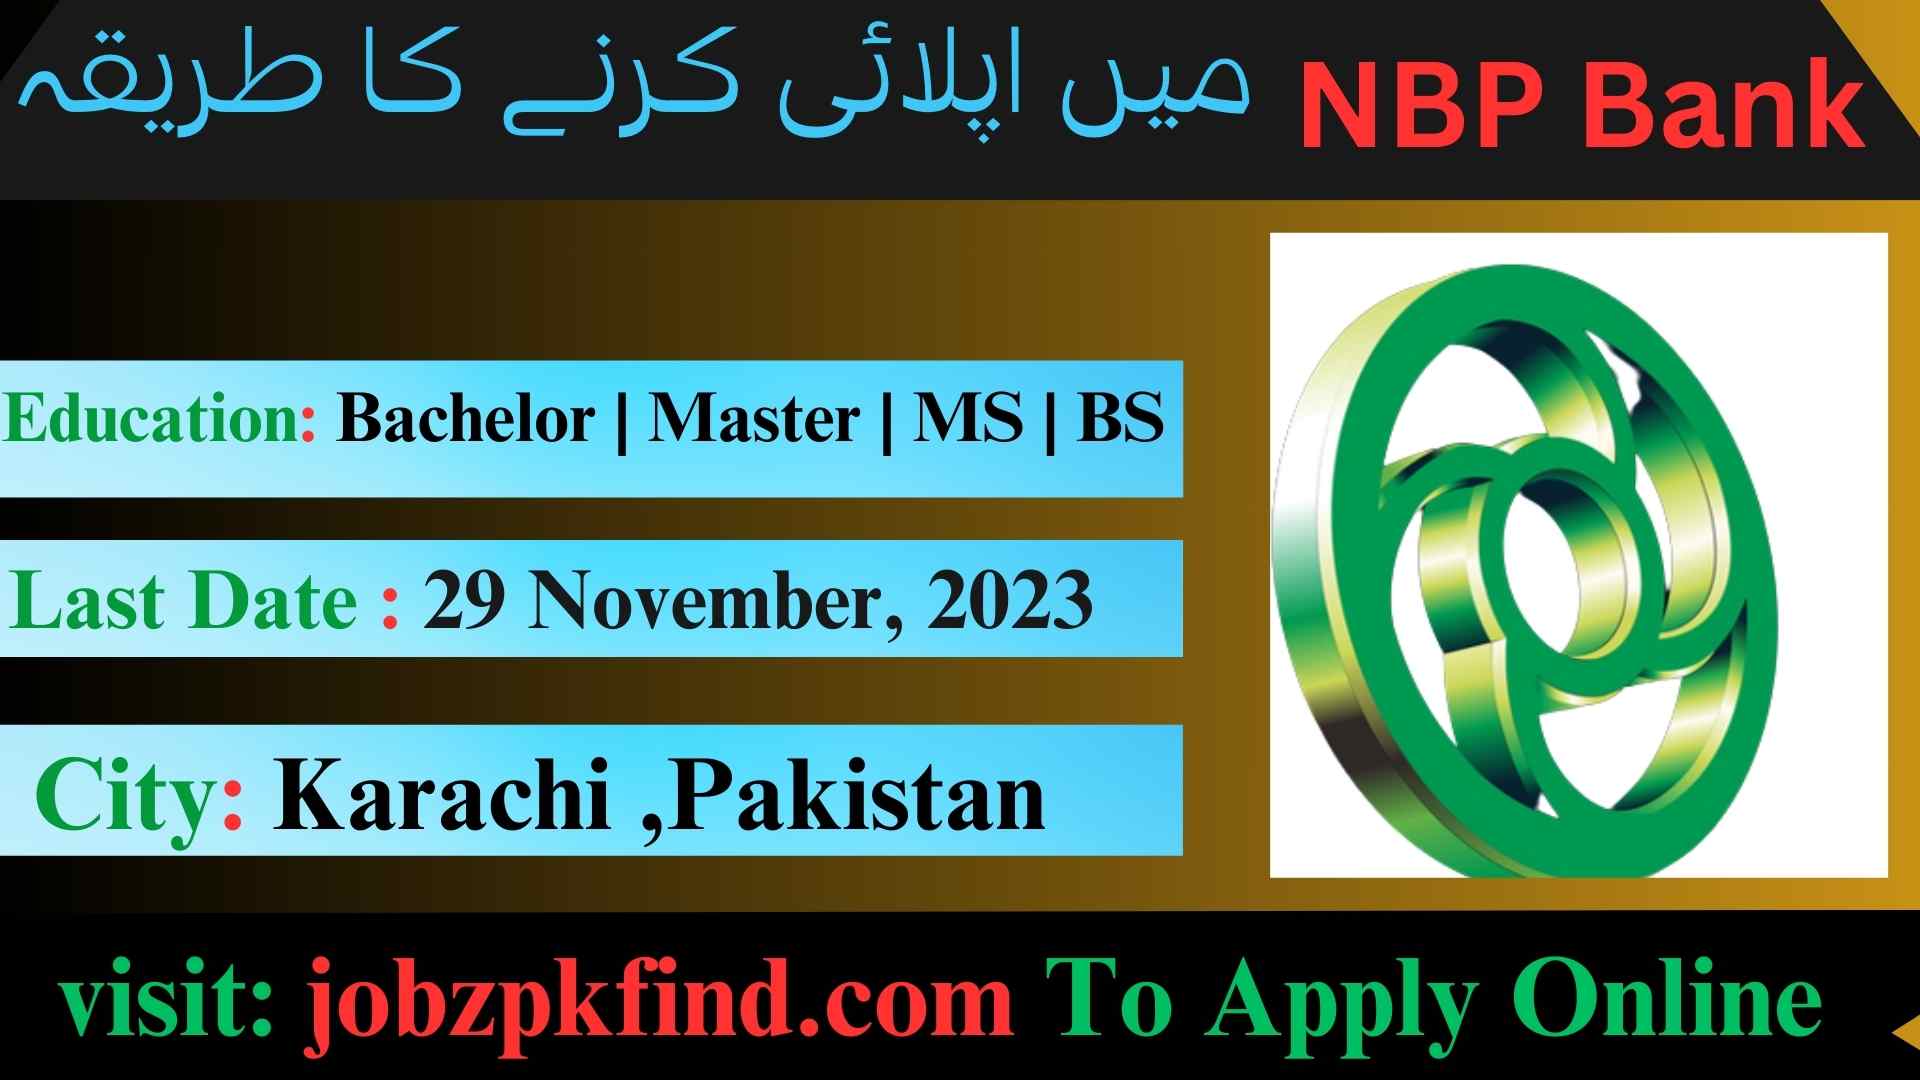 Latest National Bank of Pakistan NBP Bank Jobs Karachi 2023